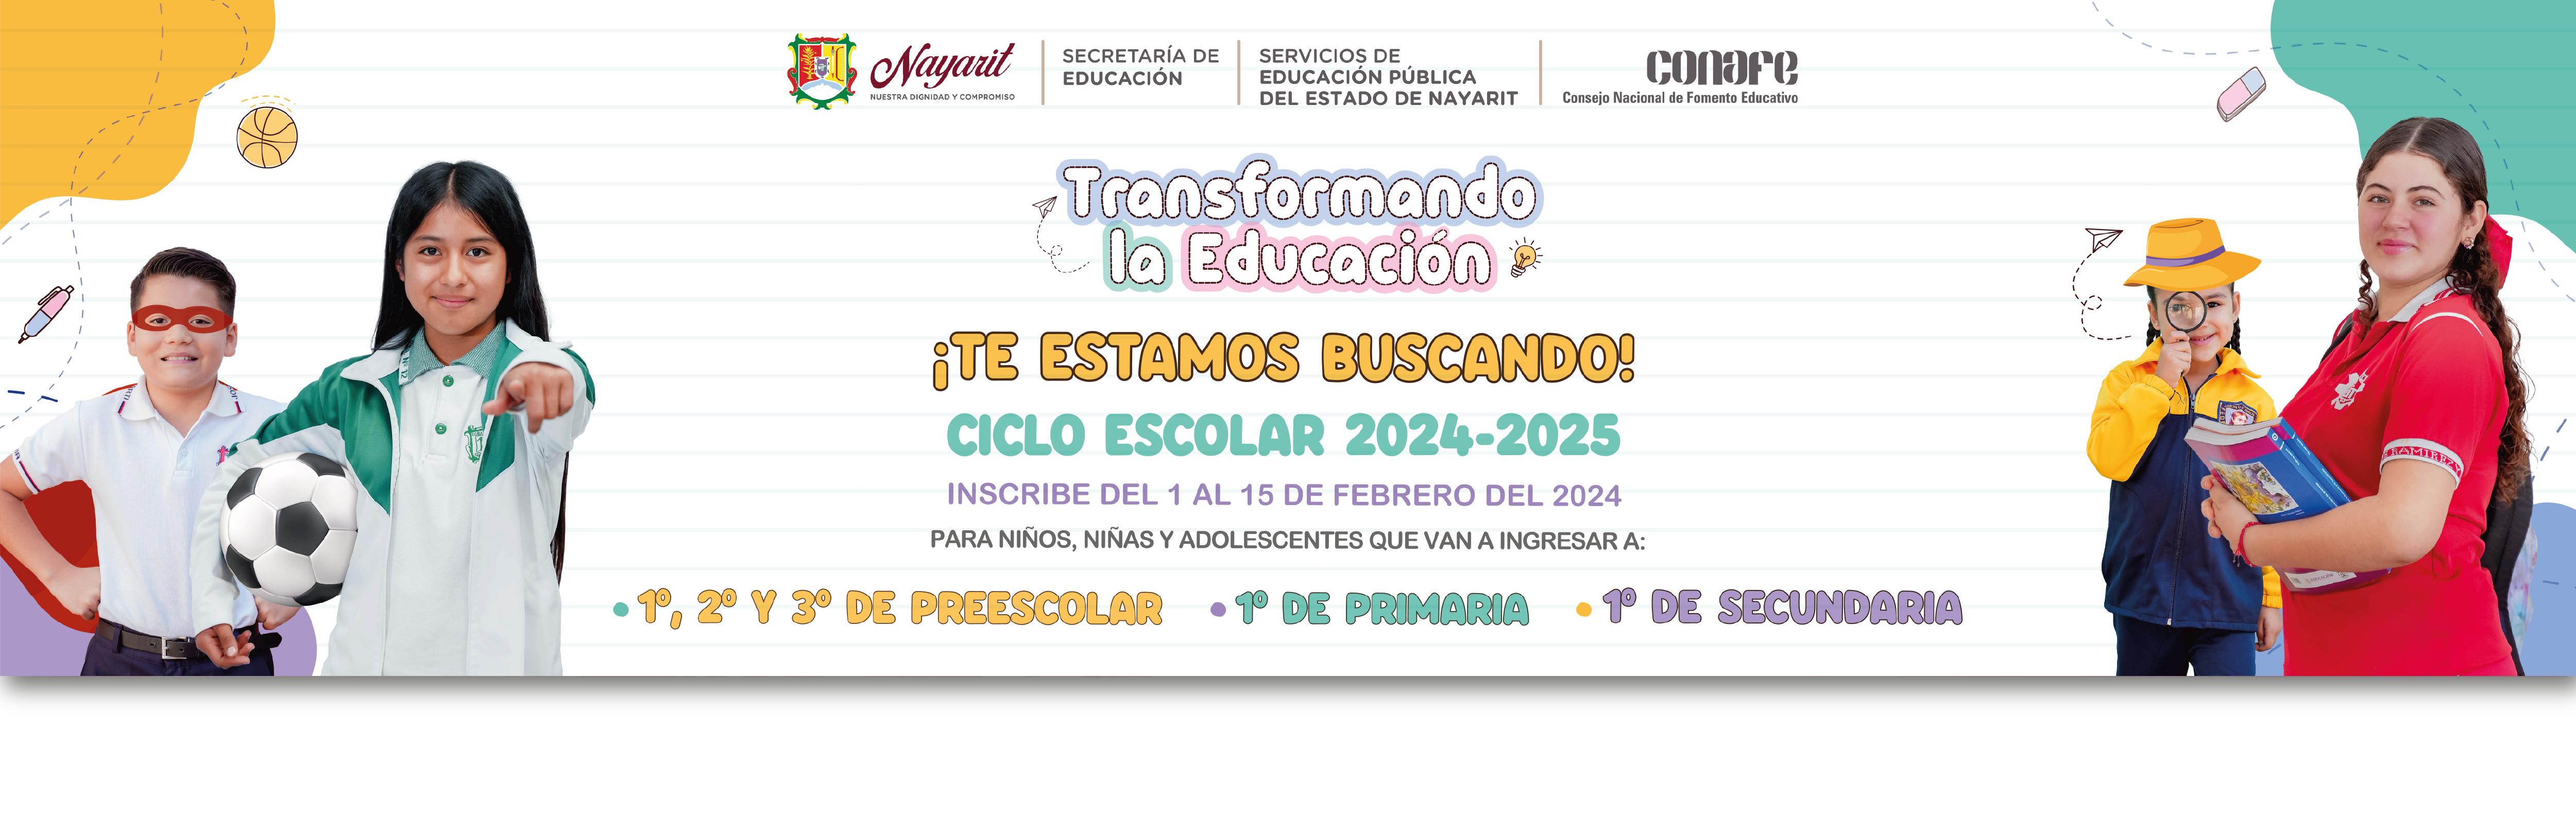 Inscripciones Ciclo Escolar 2024-2025